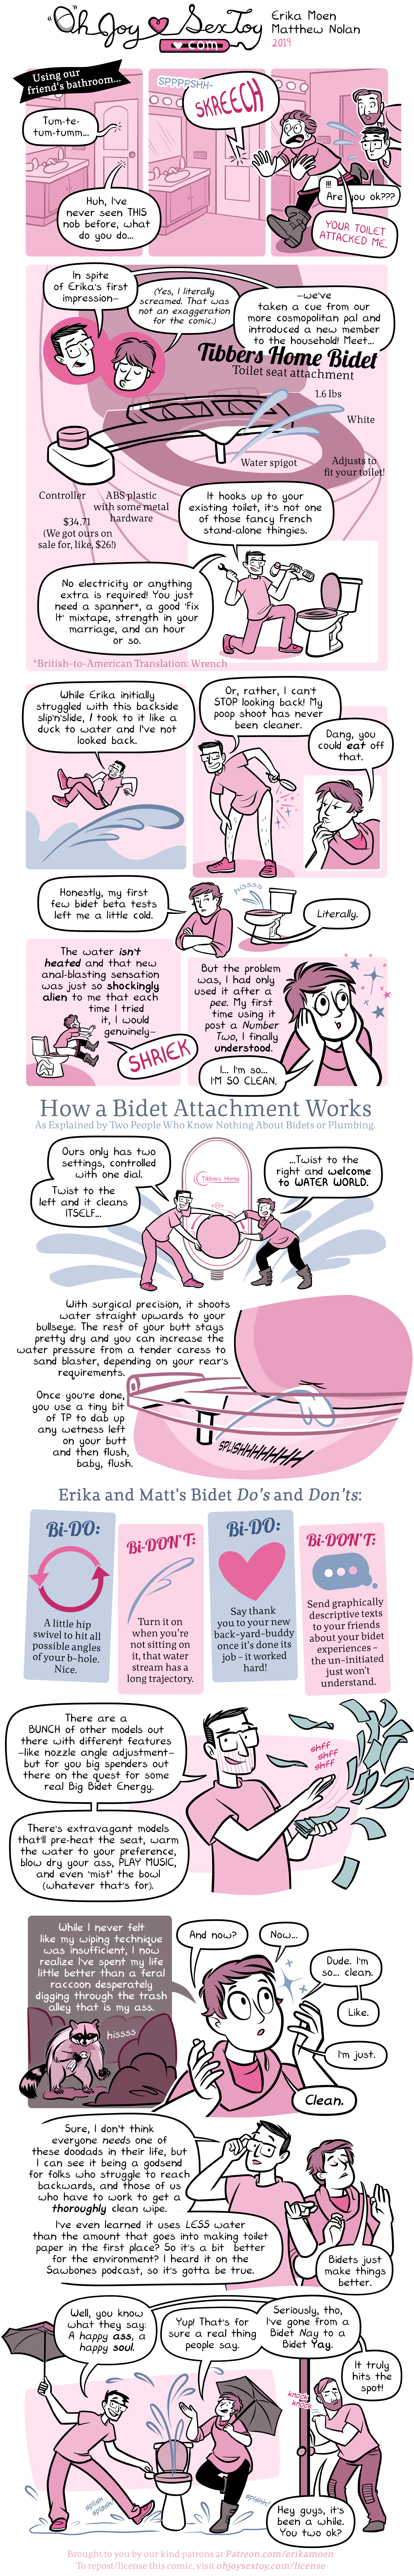 Bidet Attachment